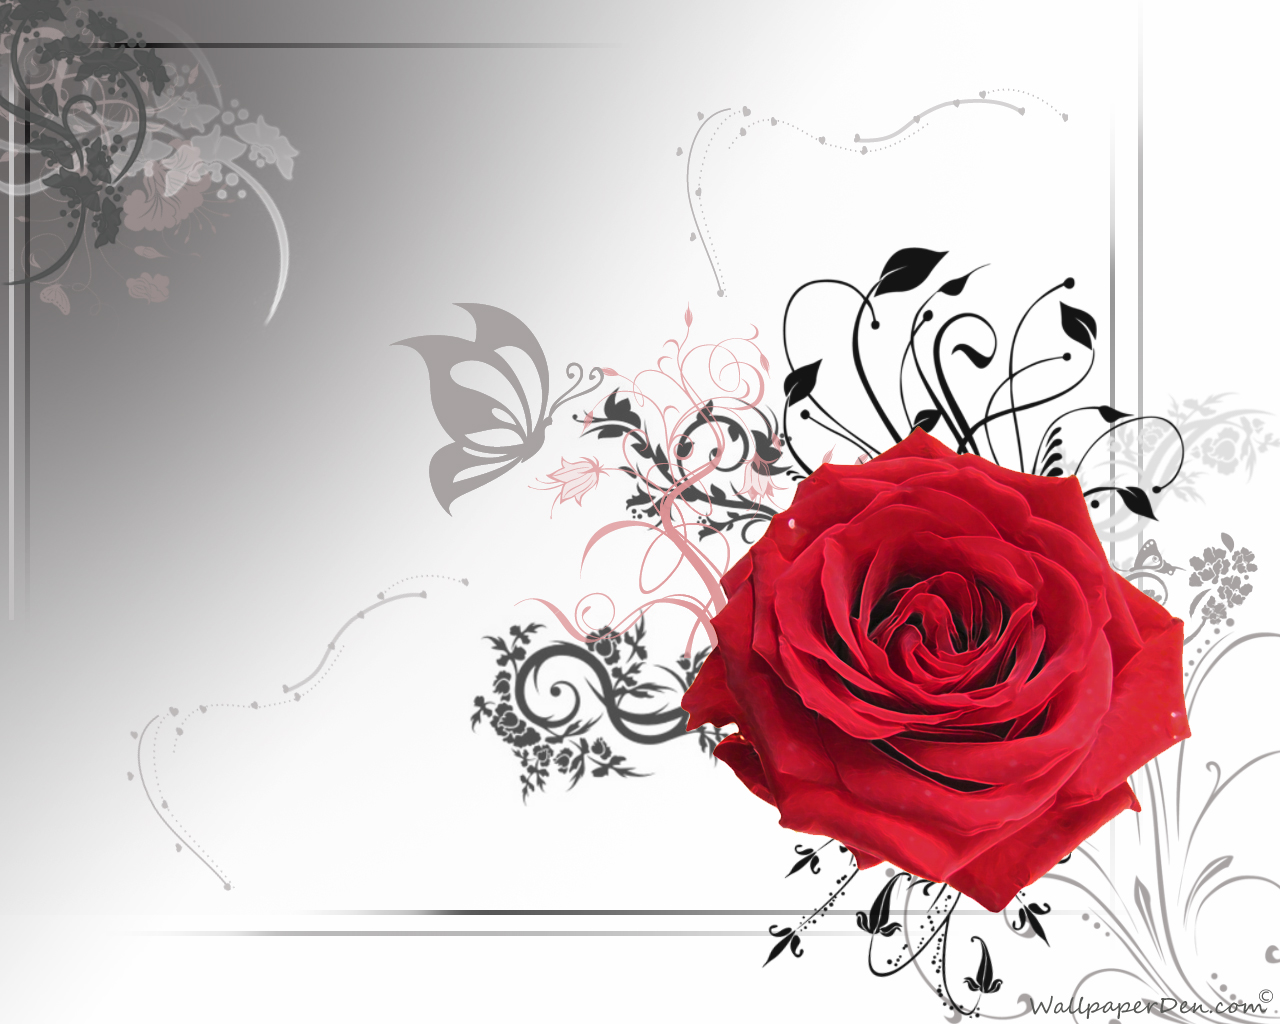 red rose live wallpaper free download,red,rose,flower,floral design,rose family